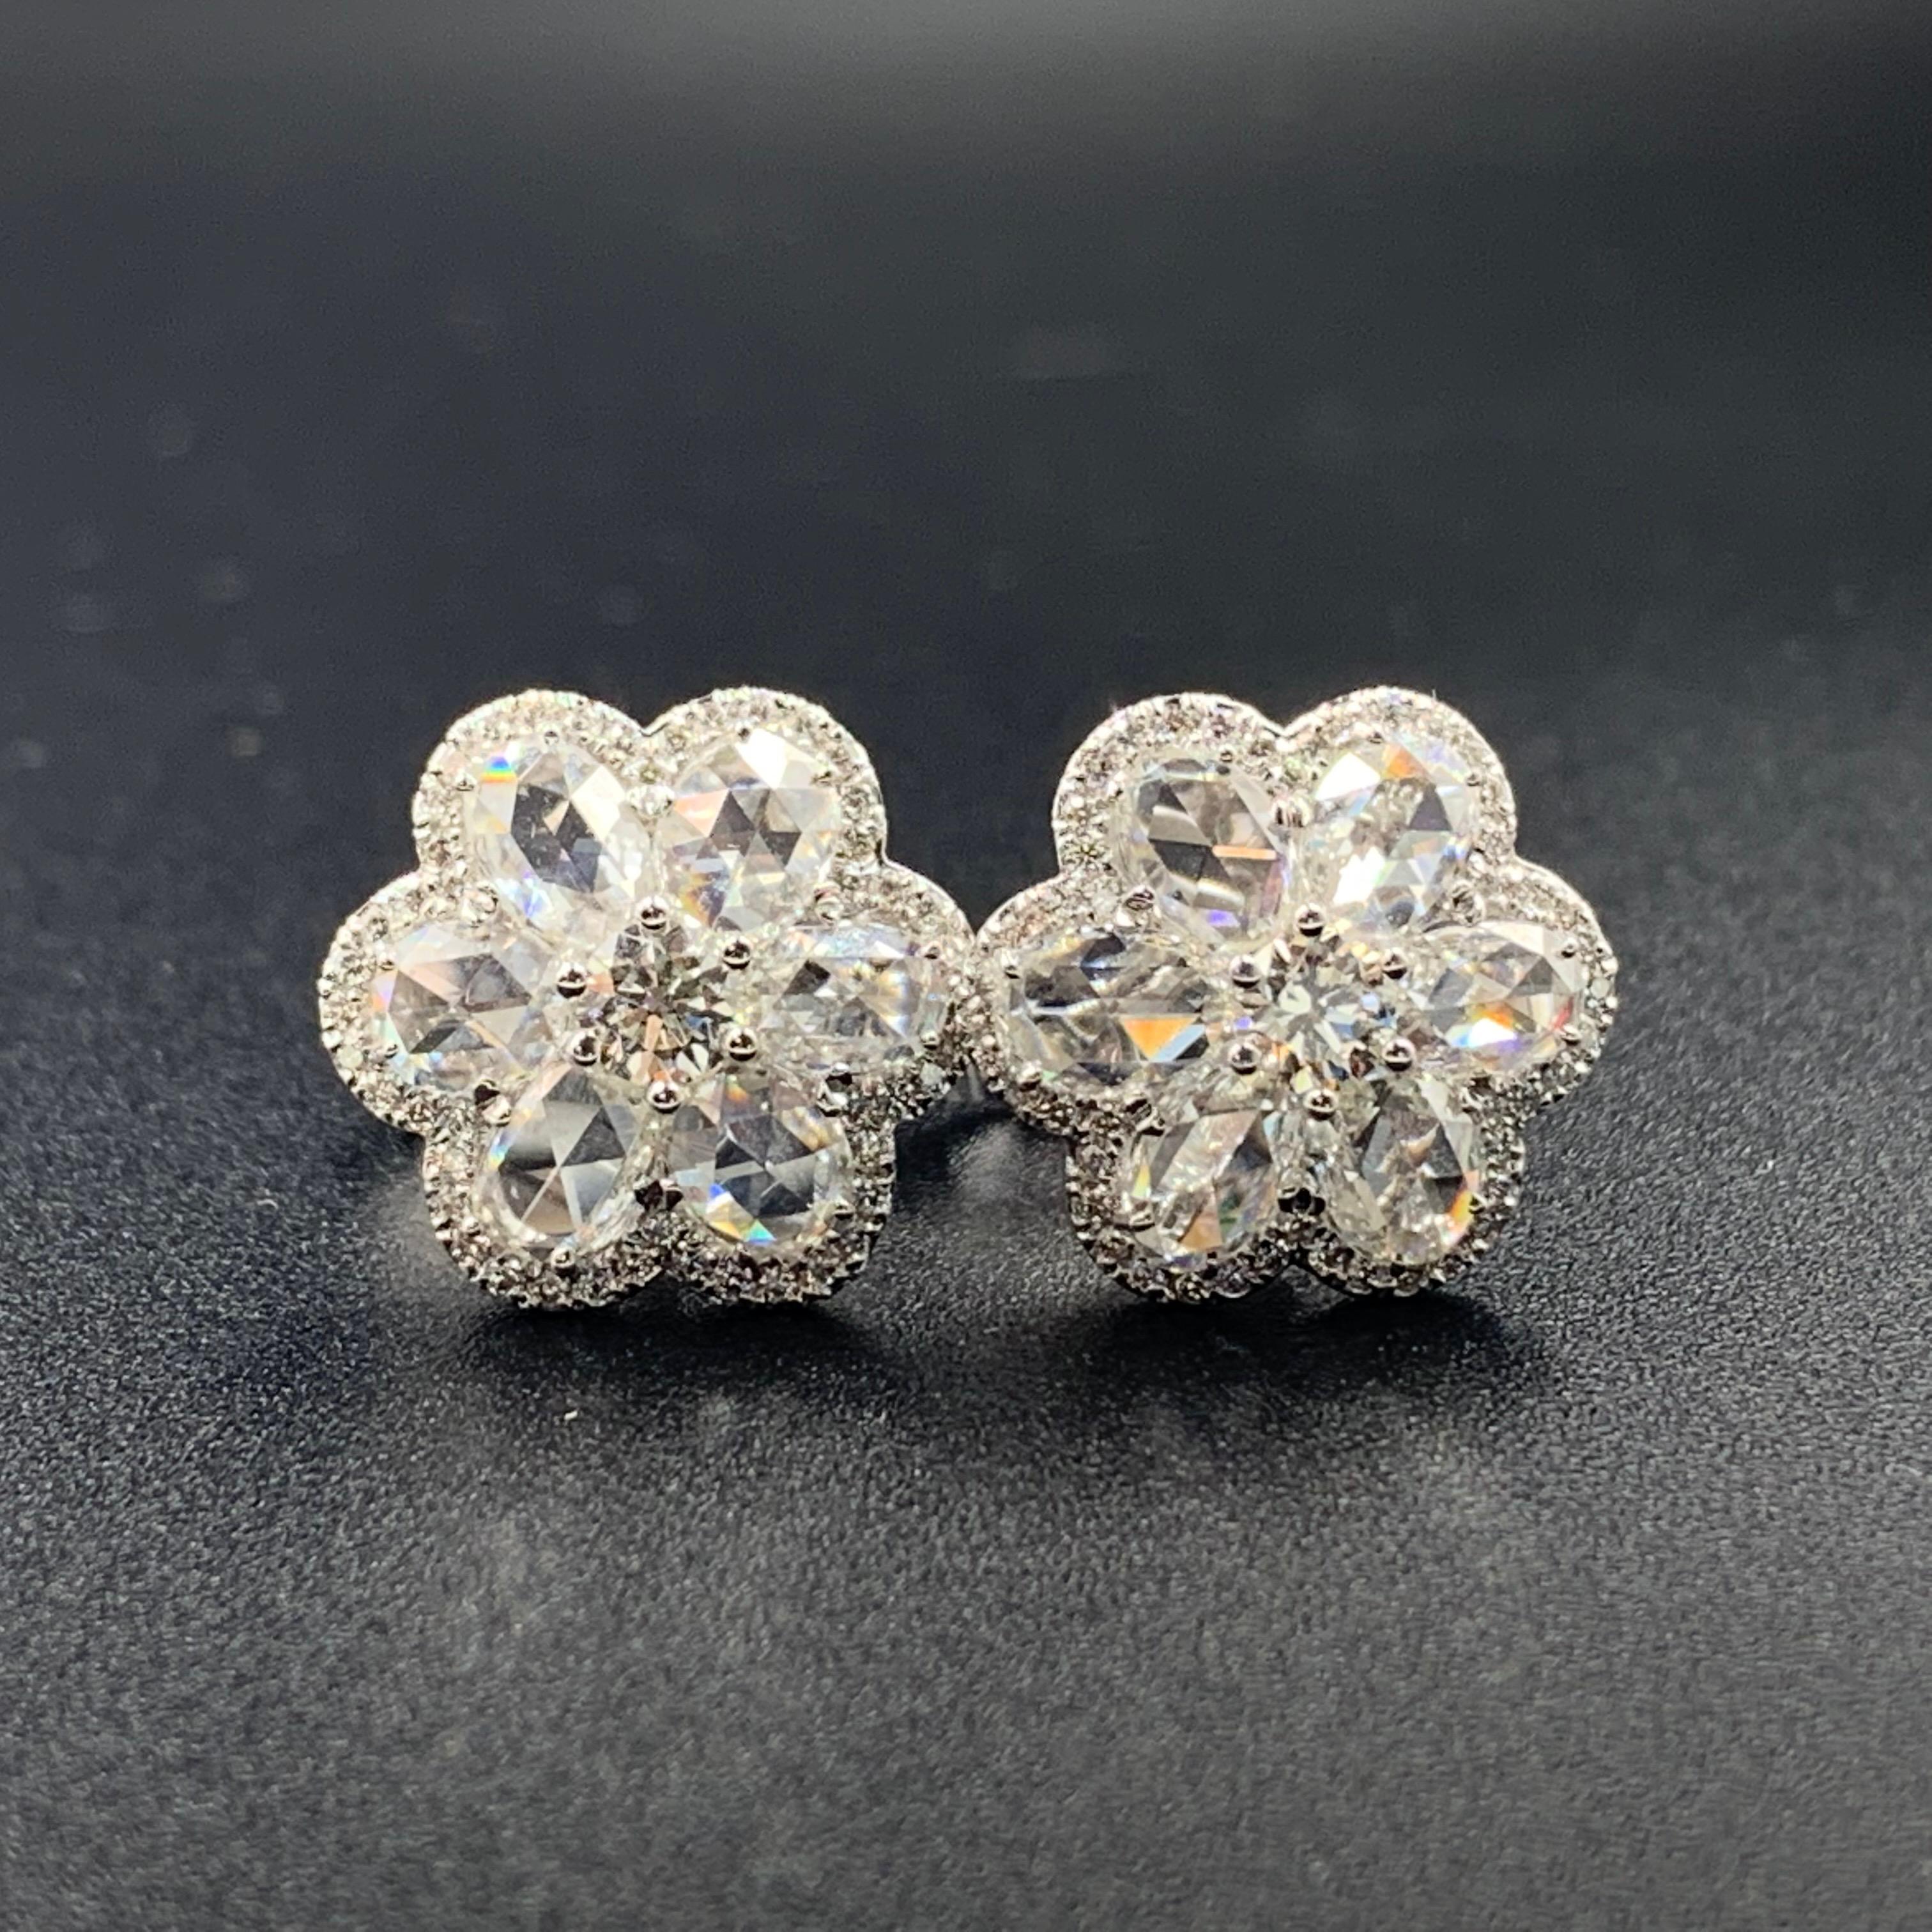 Une des meilleures ventes de la collection WhiteRose, les boucles d'oreilles vénitiennes comportent un diamant rond brillant de 0,15 carat centré autour de six diamants taille rose. Les boucles d'oreilles vénitiennes peuvent être associées à notre